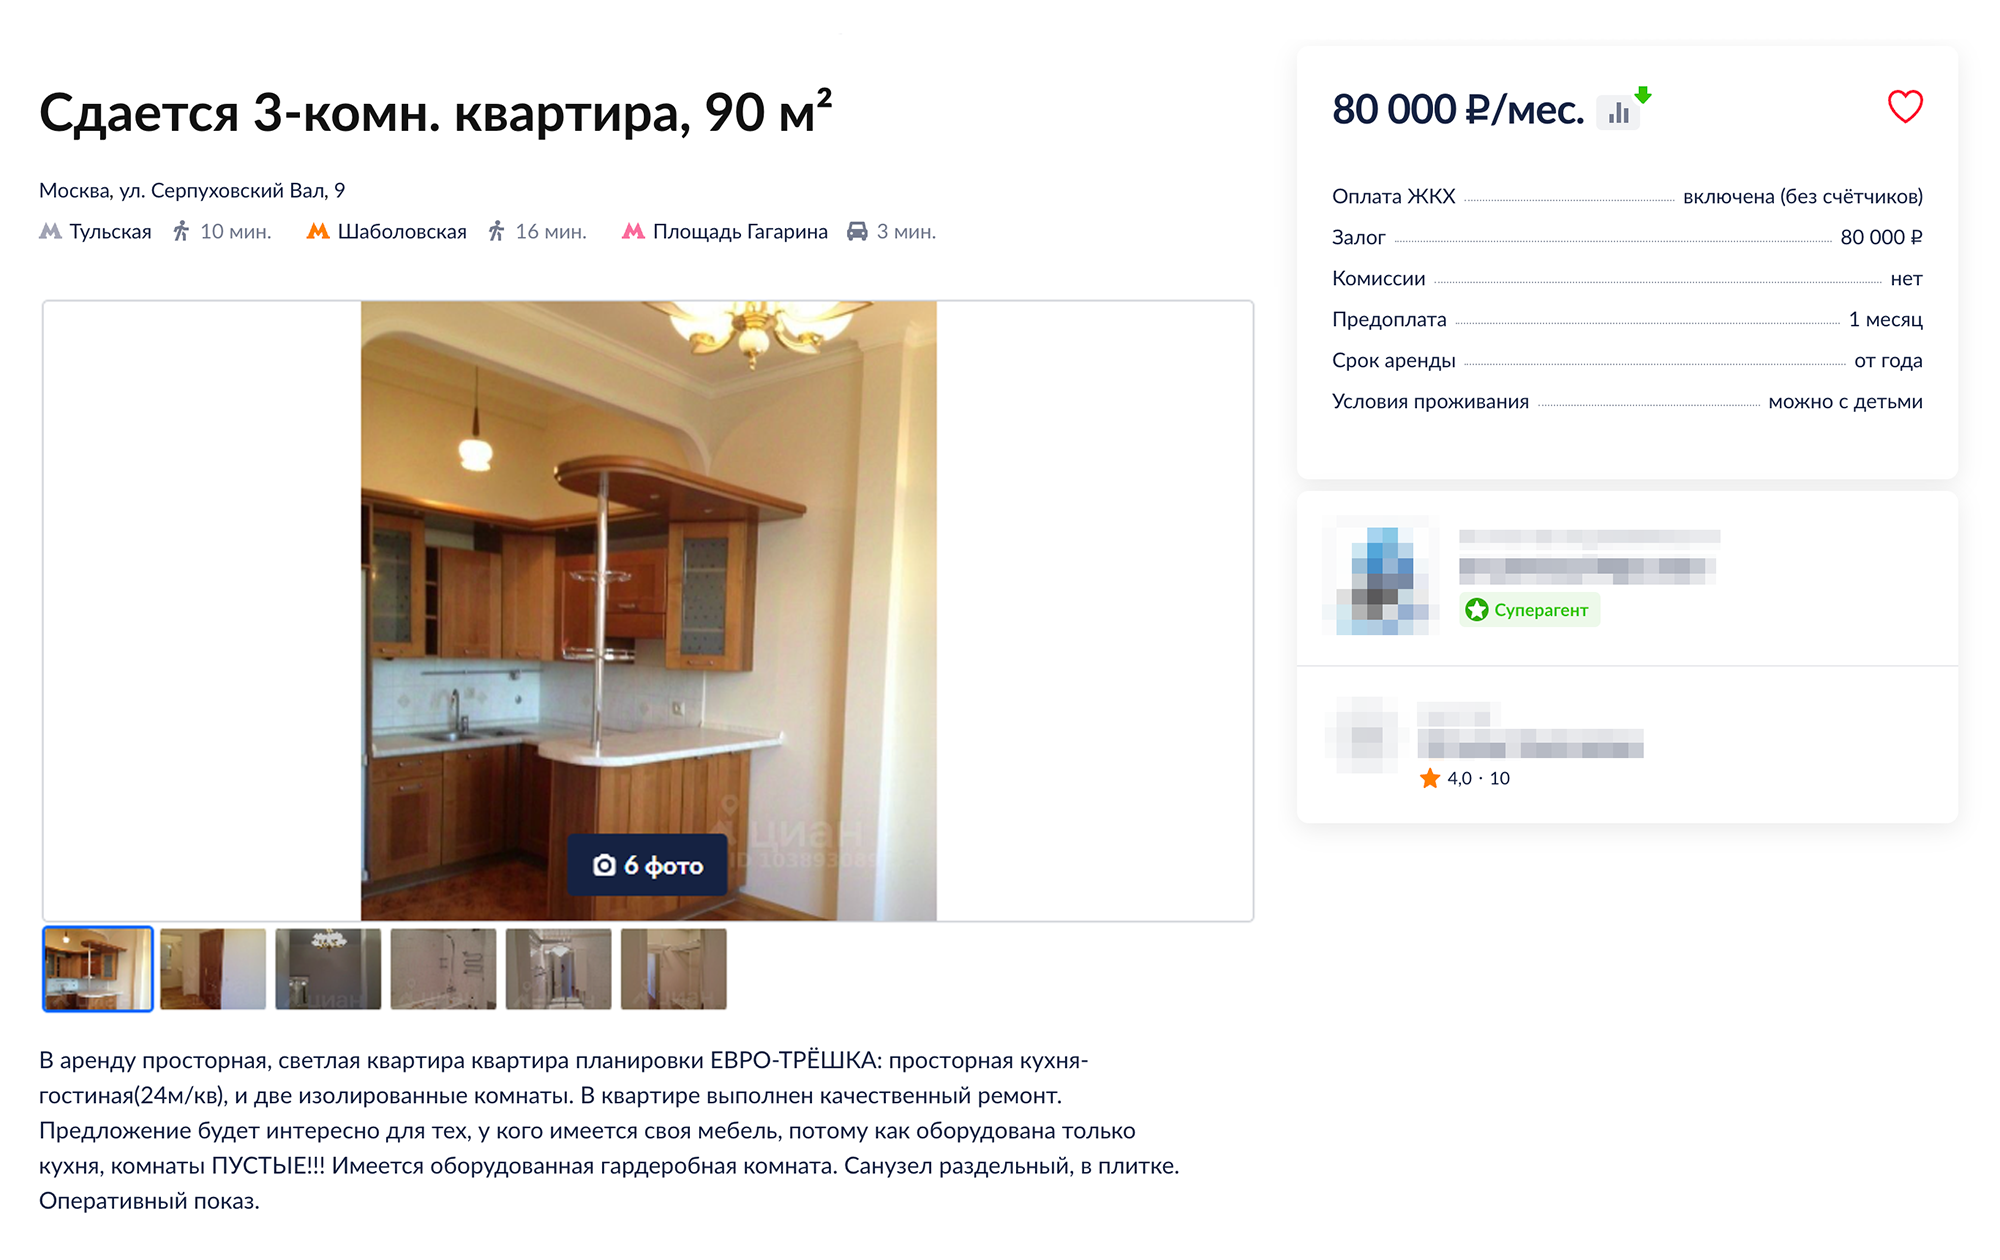 В объявлении указано, что оборудована только кухня, в комнатах мебели нет. Источник: cian.ru